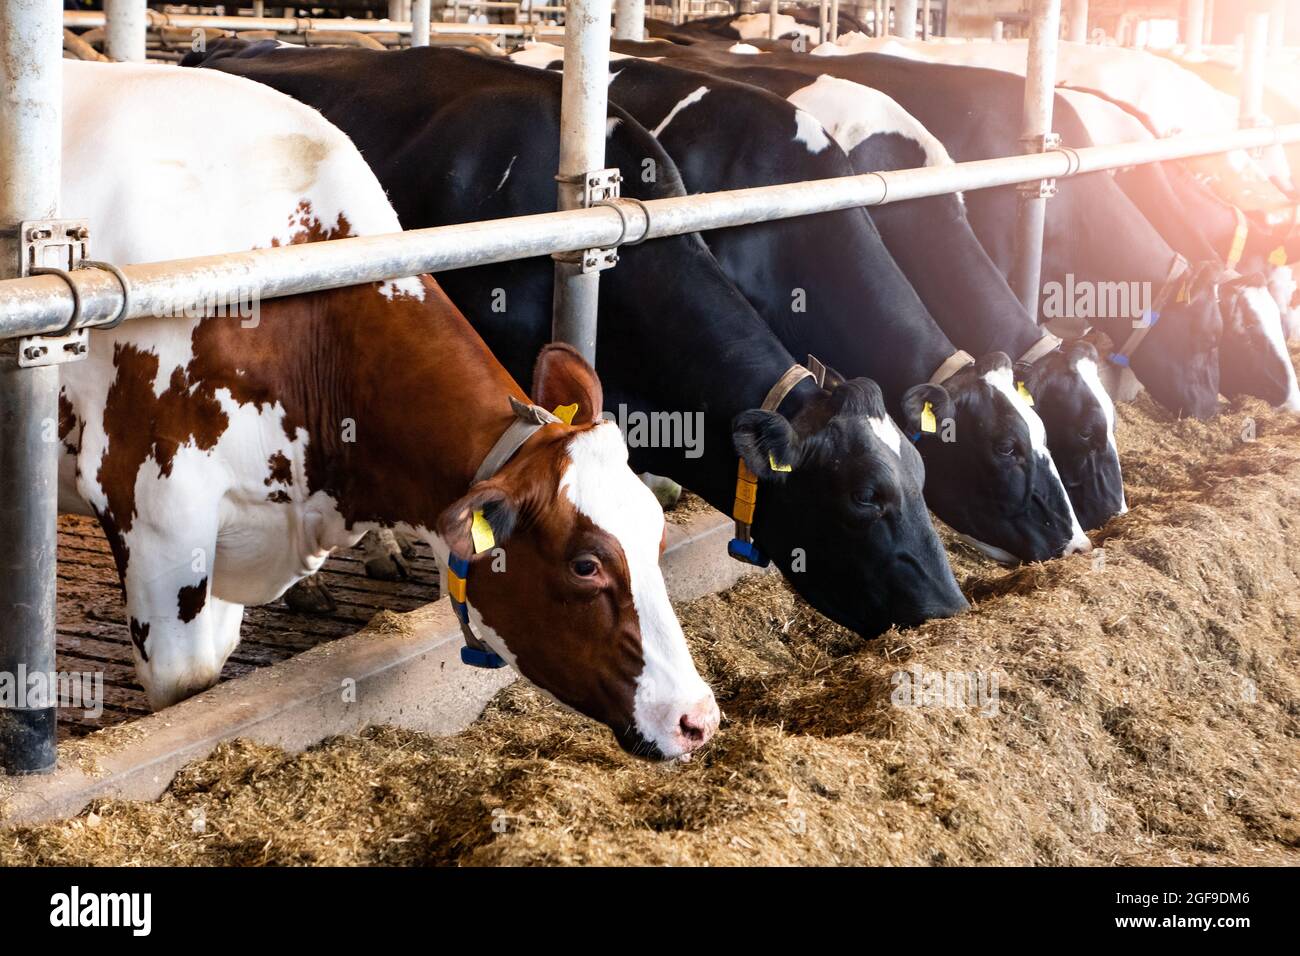 Holstein Friesian cows at a dairy farm. Stock Photo